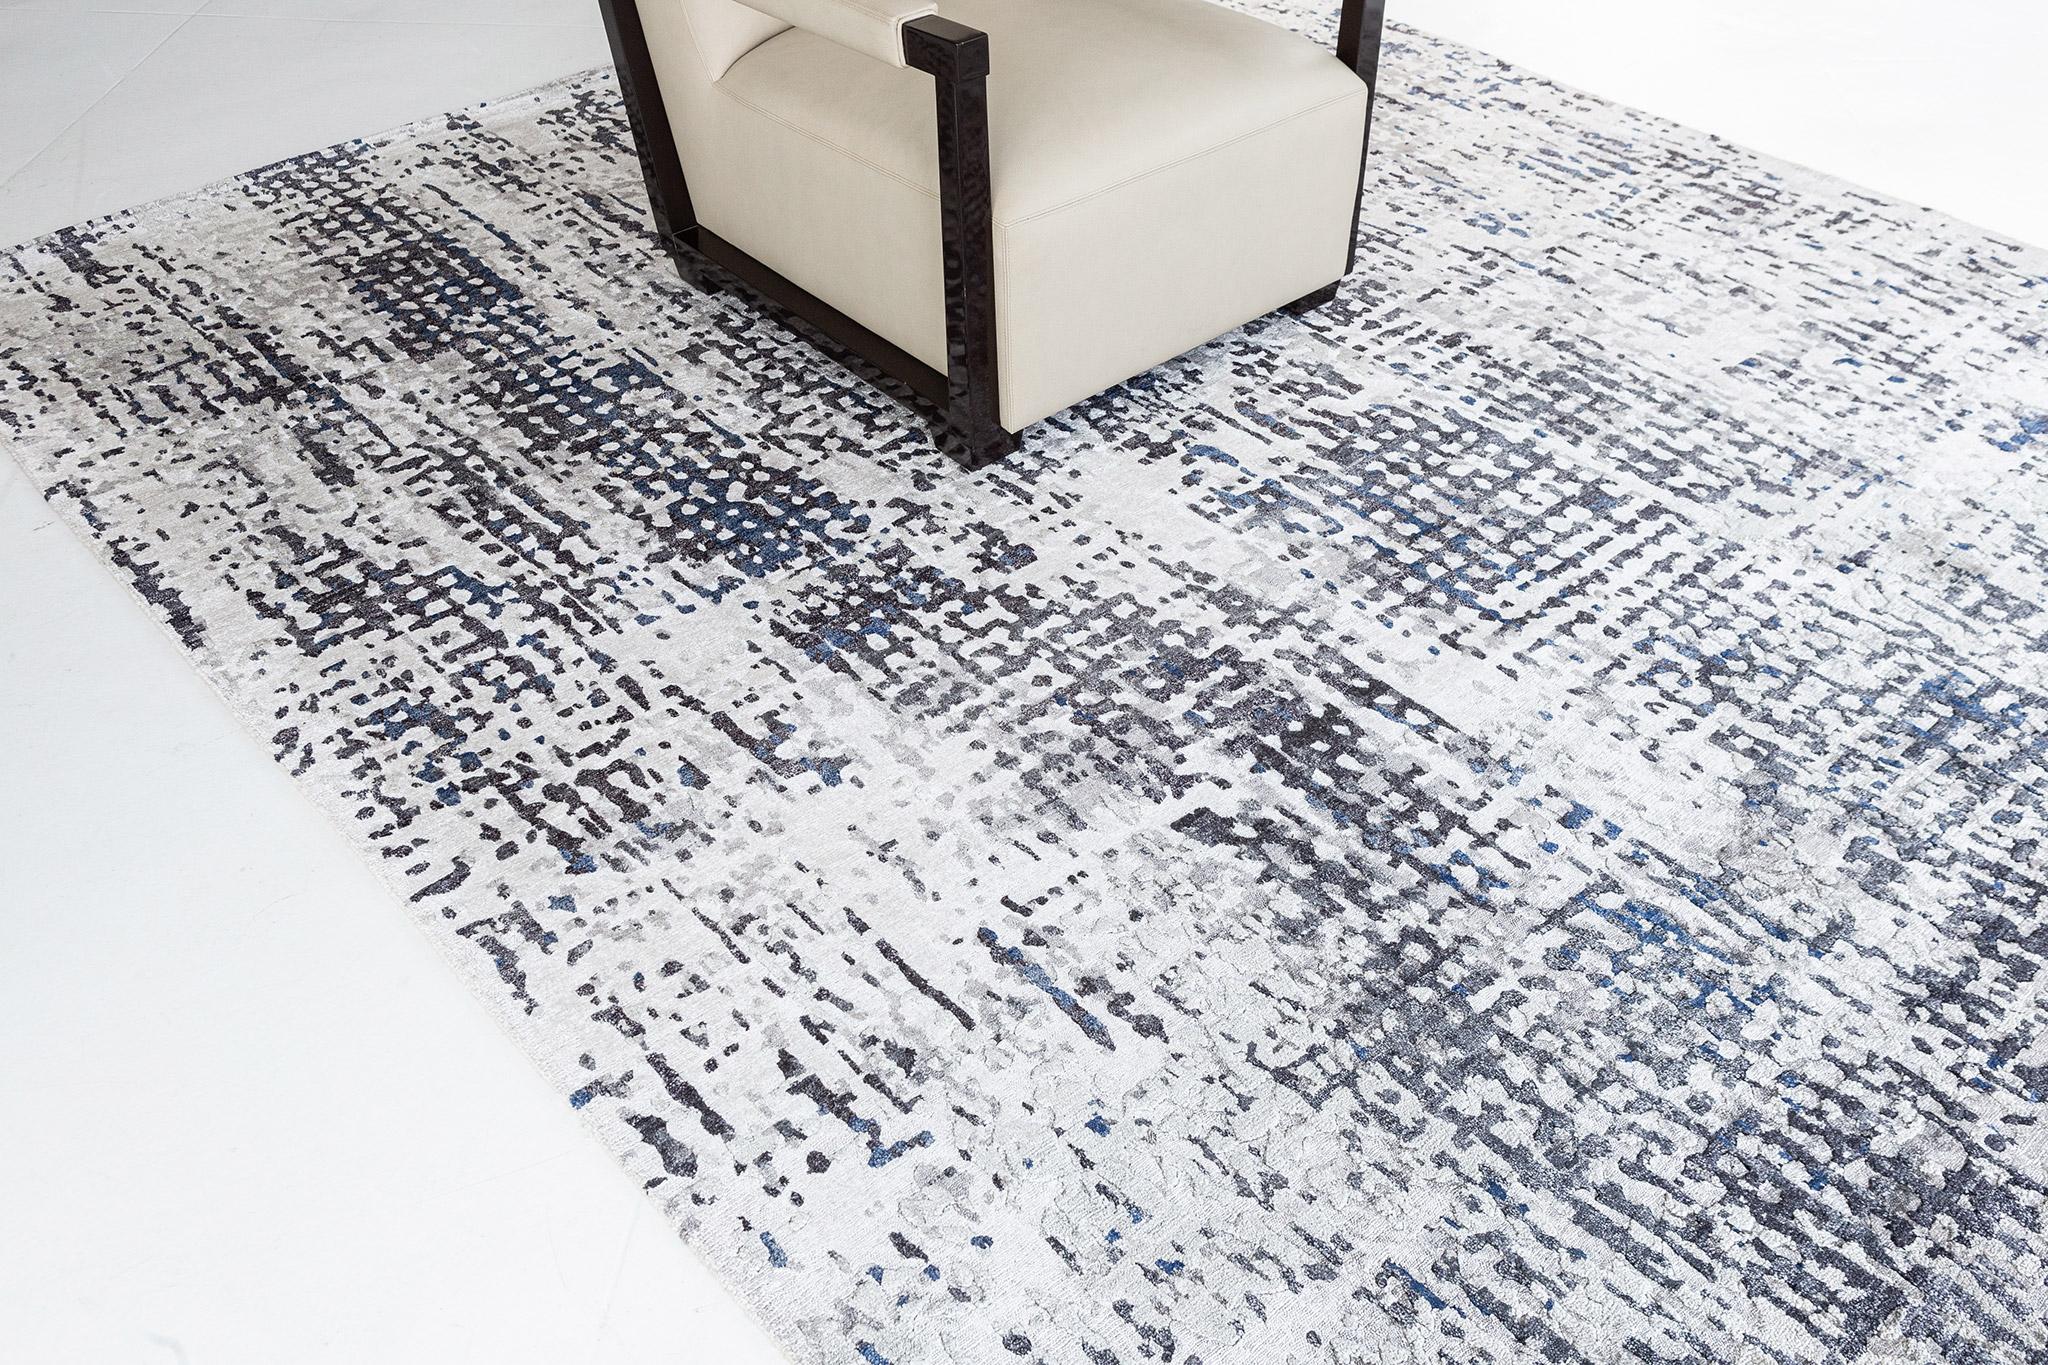 Dieser zauberhafte Modern Design Bamboo Silk Teppich zeichnet sich durch die horizontalen und vertikalen Striche aus, mit seiner spielerischen Kombination aus anthrazit und grau dominierenden Farben. Sie ist ebenso trendig wie raffiniert, perfekt